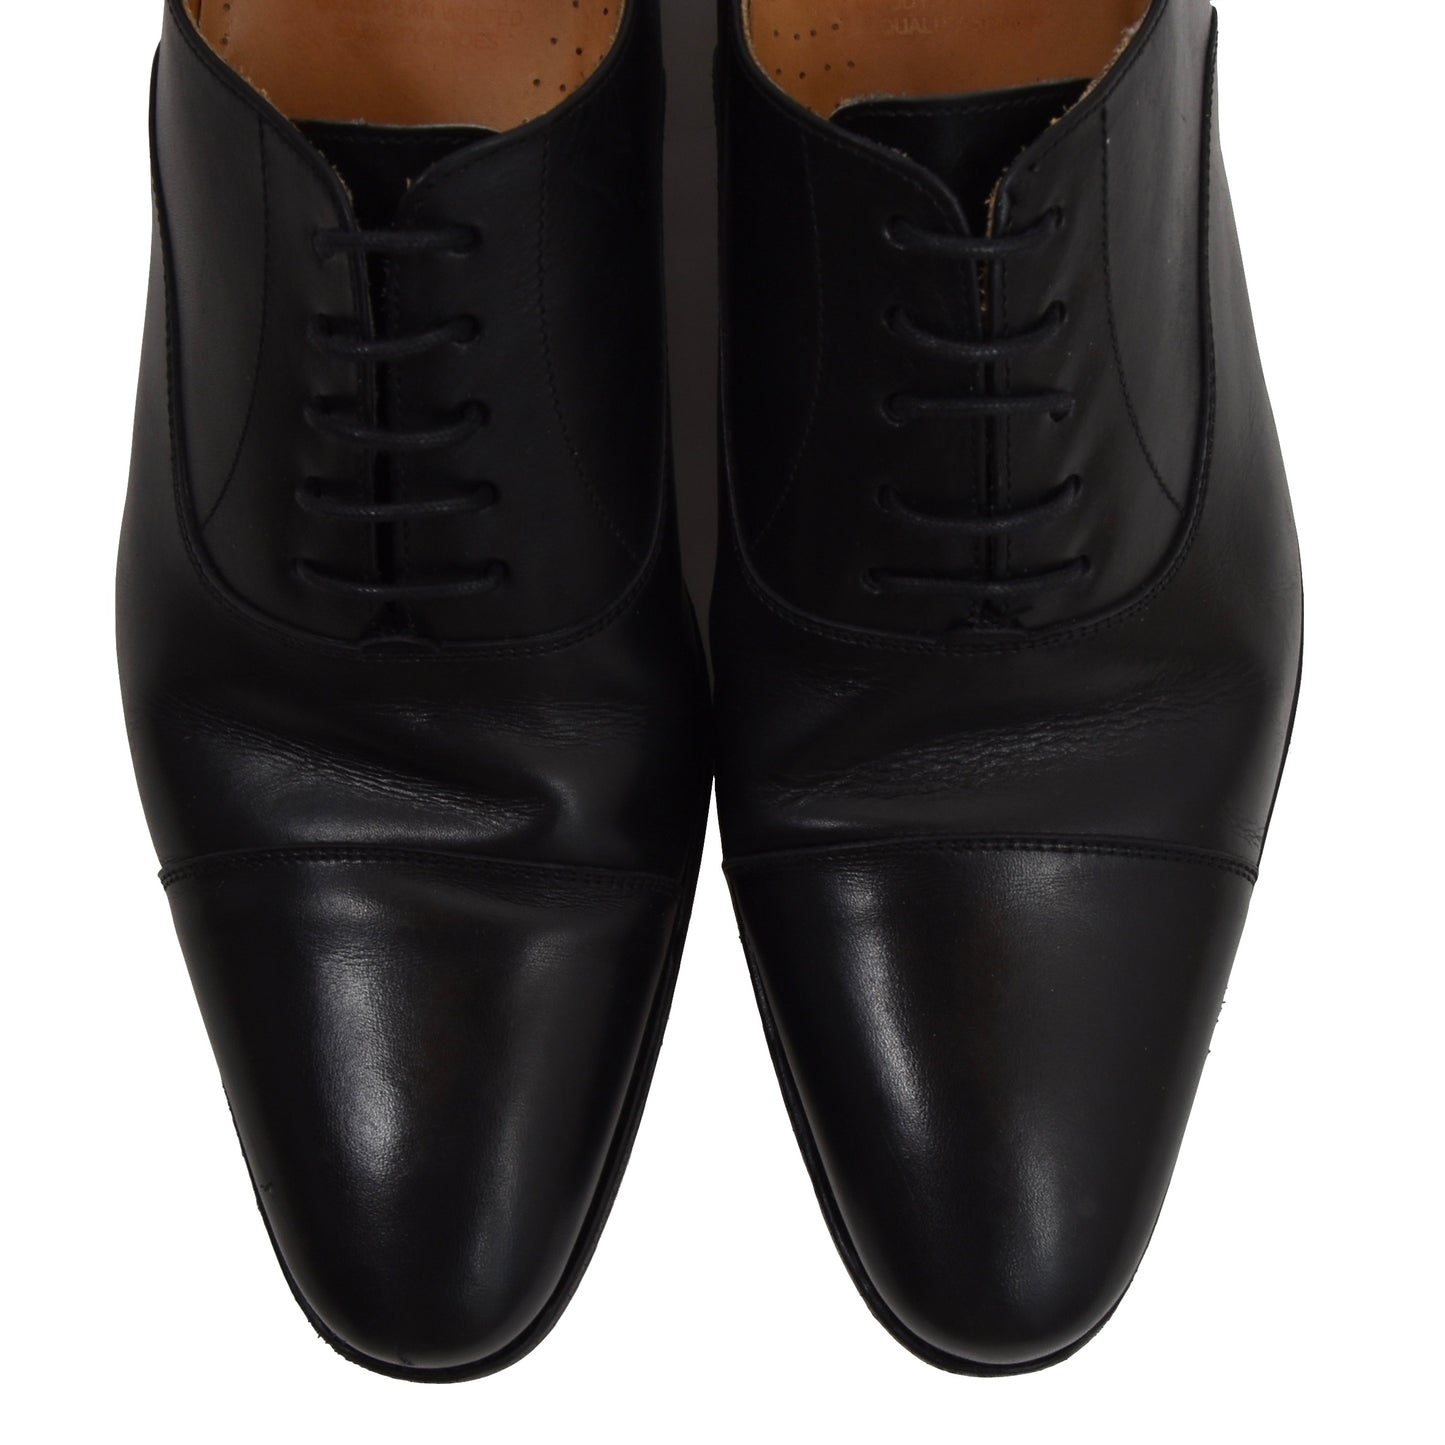 Berwick 1707 Balmoral Schuhe Größe 42,5 - Schwarz